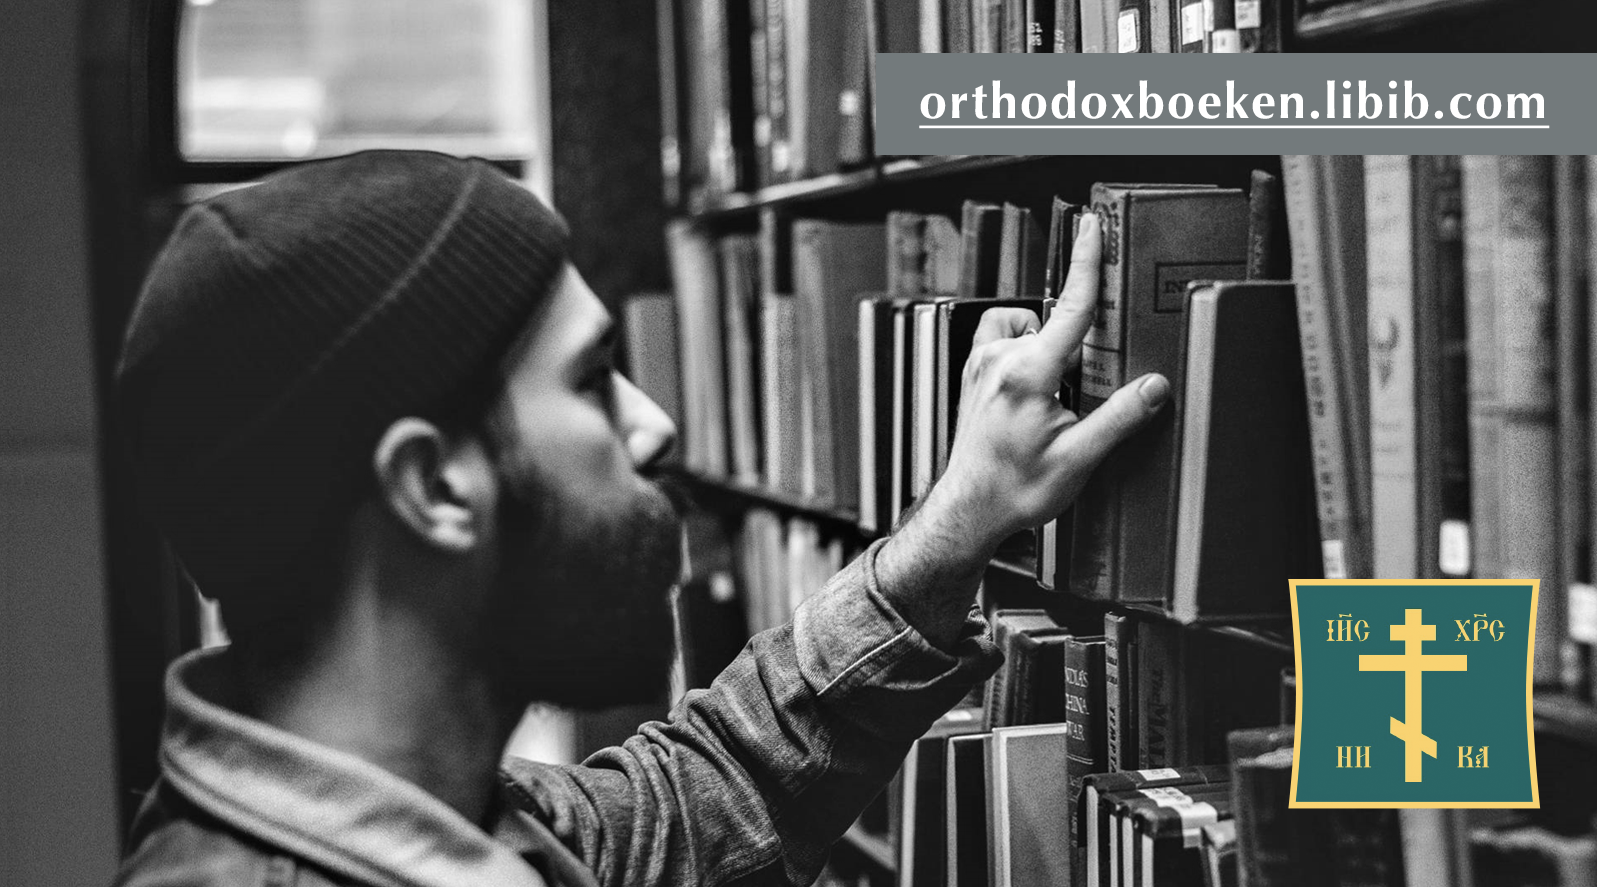 Internet catalogus van Orthodoxe boeken in de Nederlandse taal